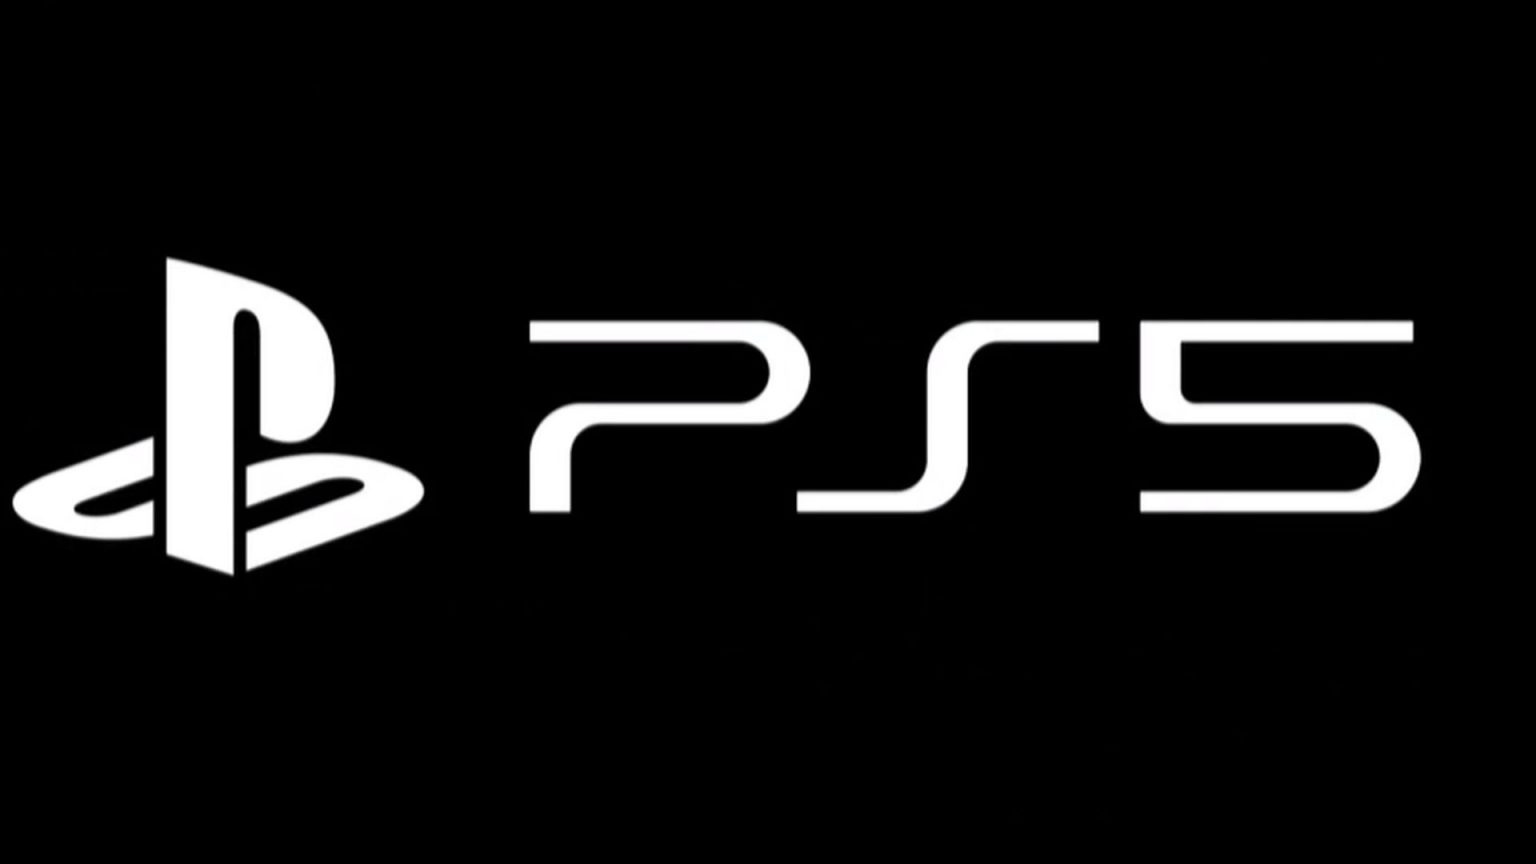 Ps5 для чего нужна. Sony PLAYSTATION 5 логотип. Sony PLAYSTATION 4 logo. PLAYSTATION 5 logo PNG. PLAYSTATION 5 Slim.